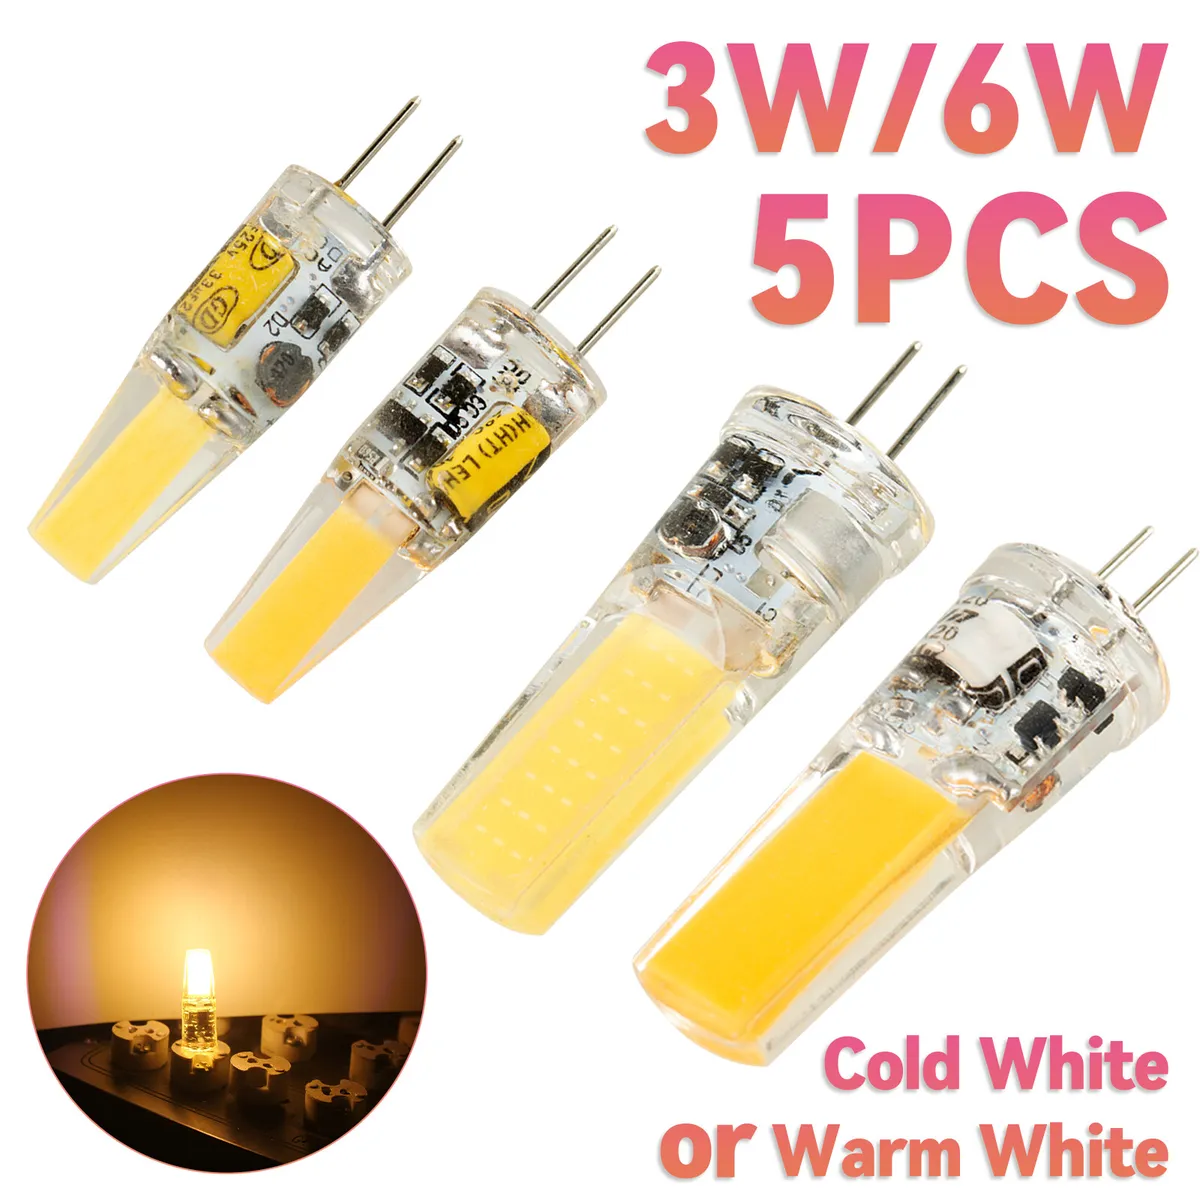 G4 Led Bulb 12v Bipin Base Landscape Bulbs 3 Watt Led Lighting Bulbs | eBay